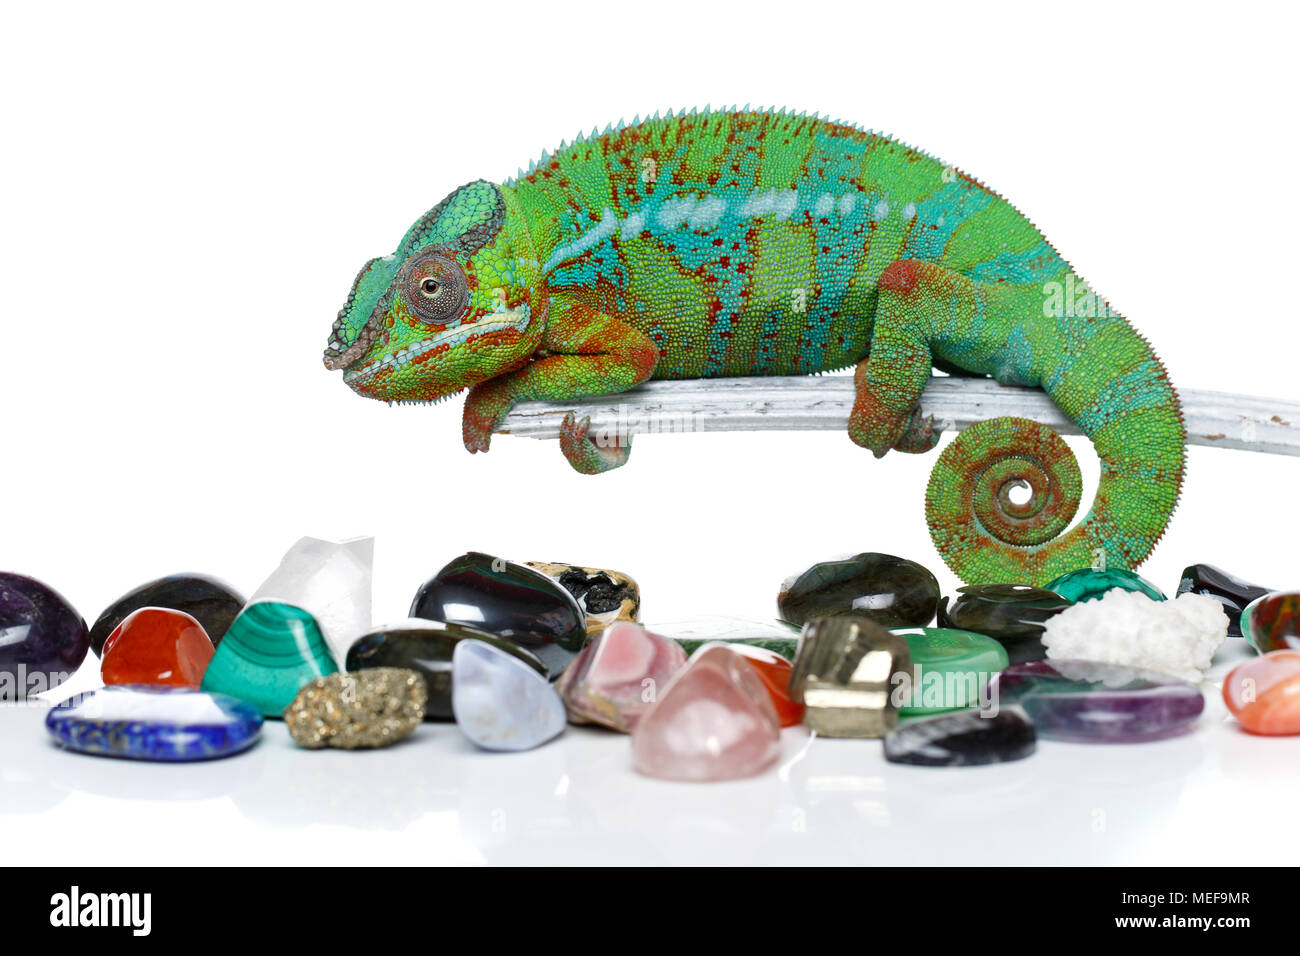 alive chameleon reptile with semi-precious stones. studio shot. copy space. Stock Photo